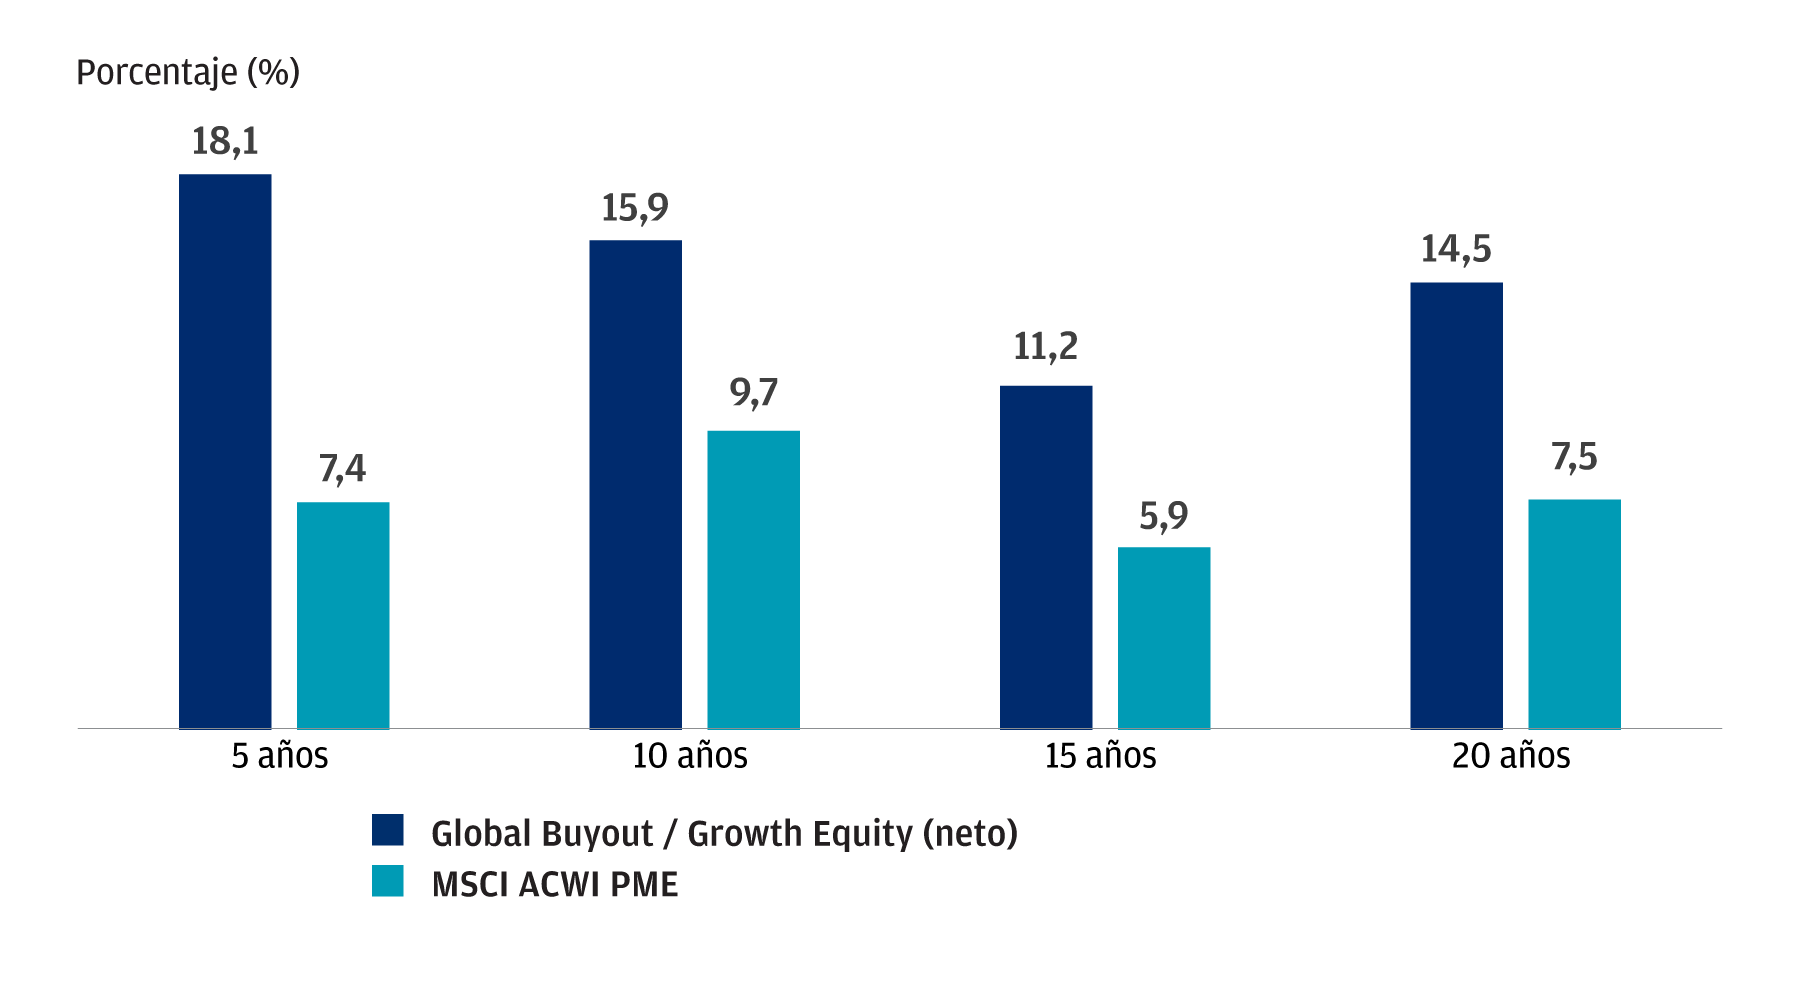 Gráfico en el que se muestran las rentabilidades históricas anualizadas del índice de global buyout y growth equity frente al MSCI All Country World index como índice equivalente de los mercados cotizados.